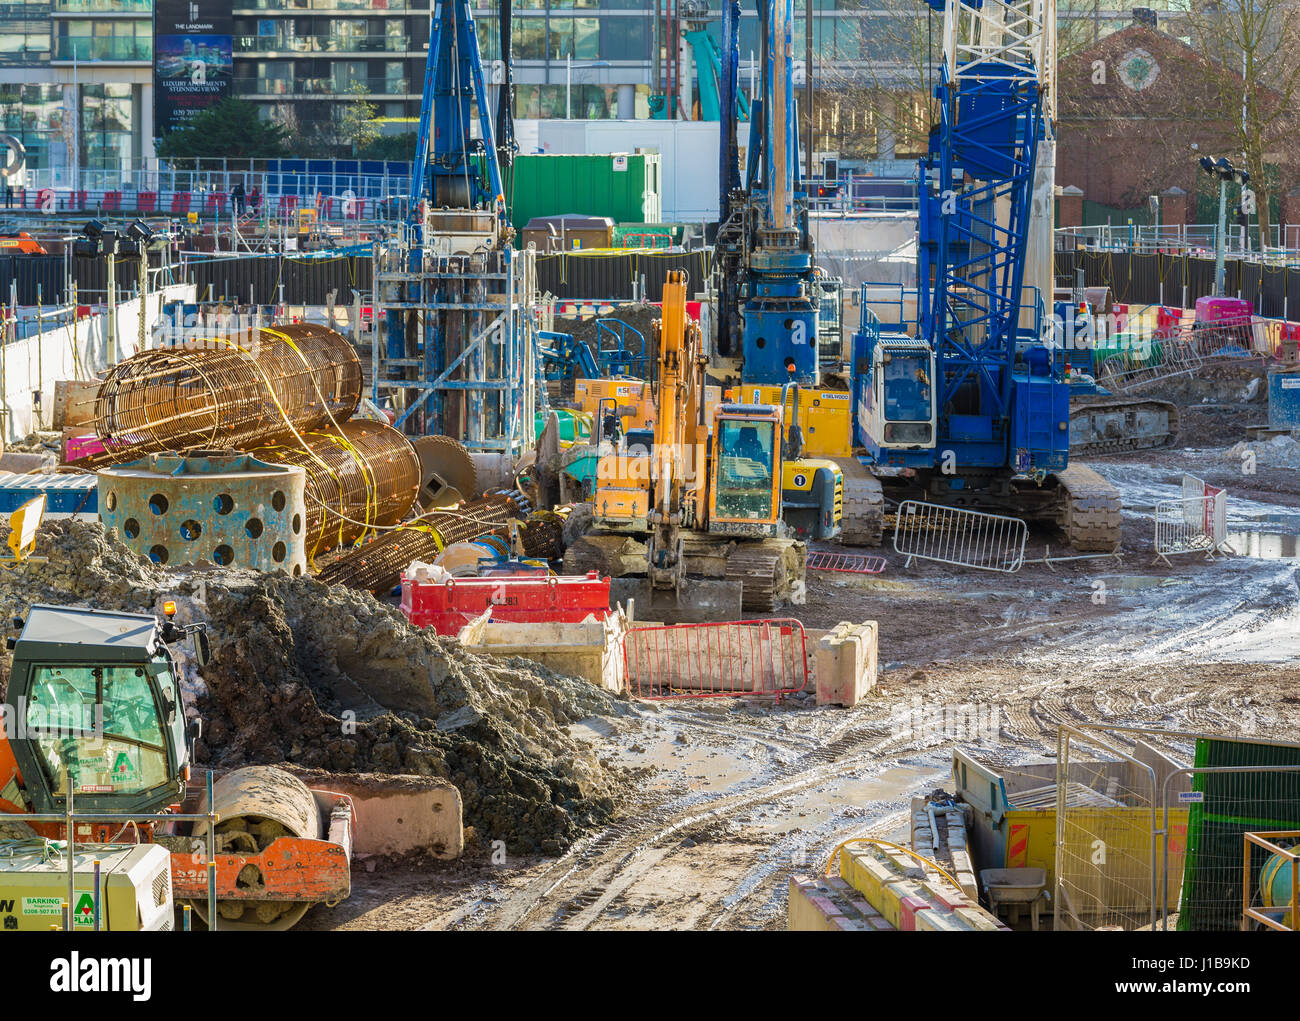 Site de construction - construction site - Docklands, Londres, Angleterre Banque D'Images